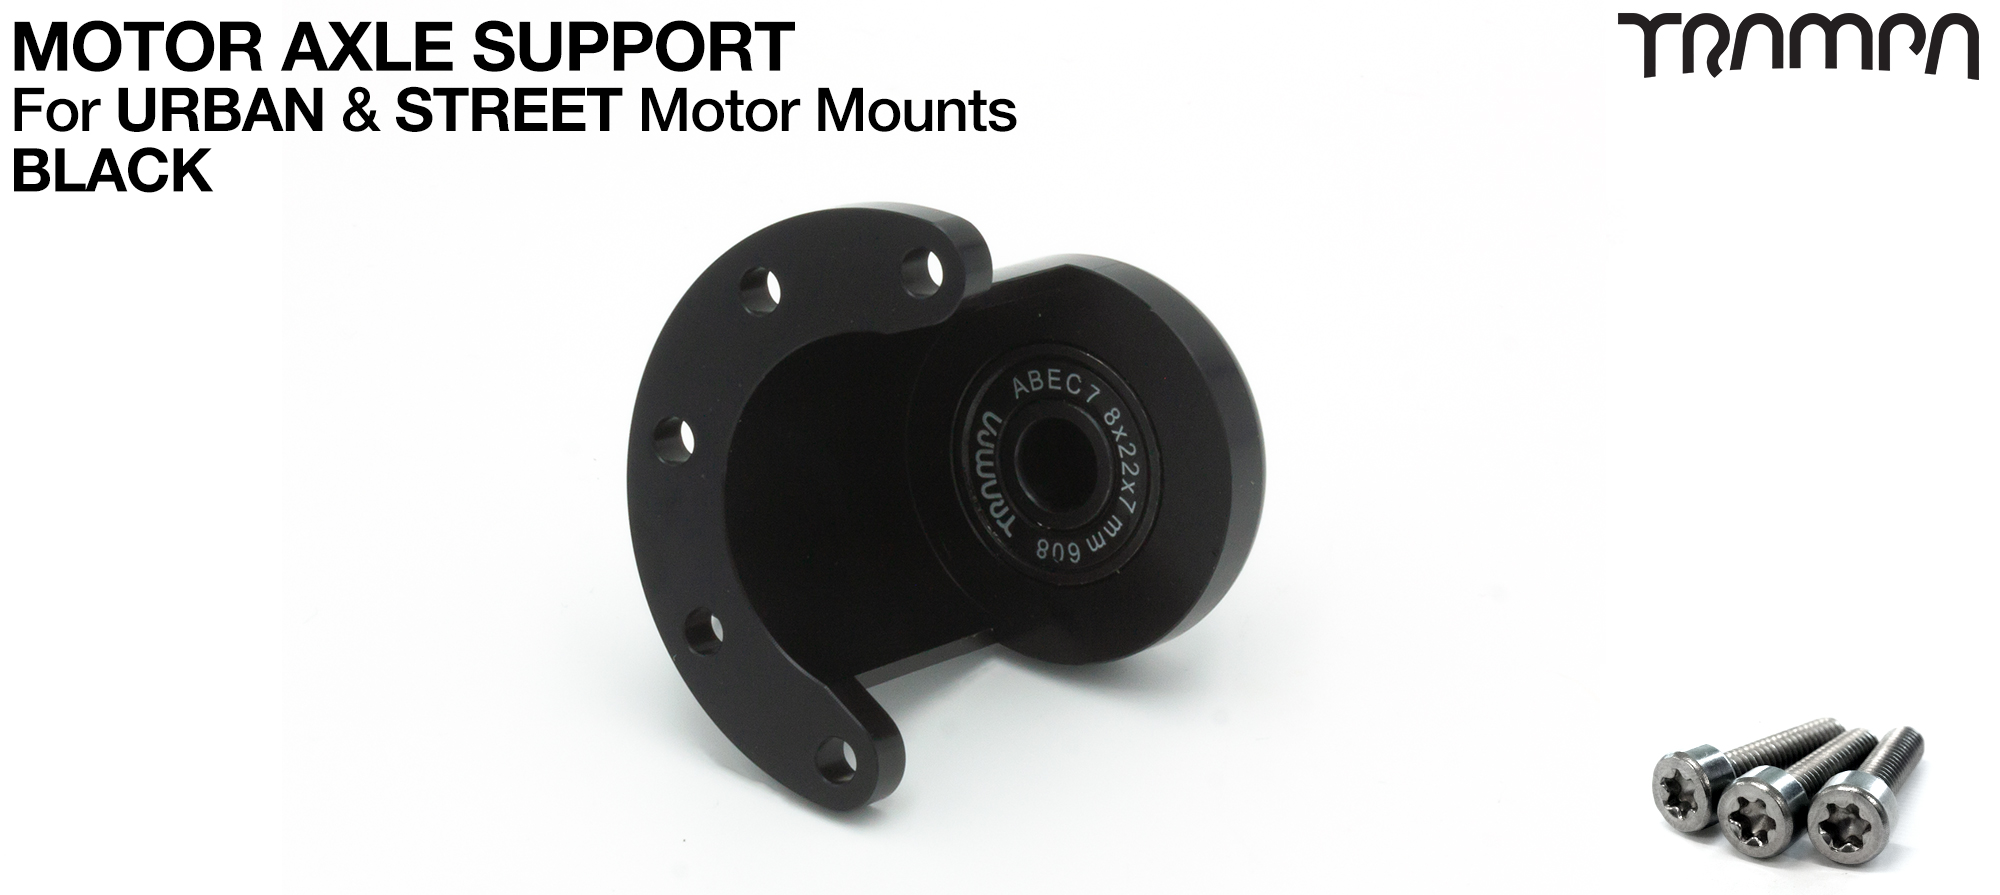 ORRSOM Longboard Motor Axle Support for Motor Mounts  - BLACK